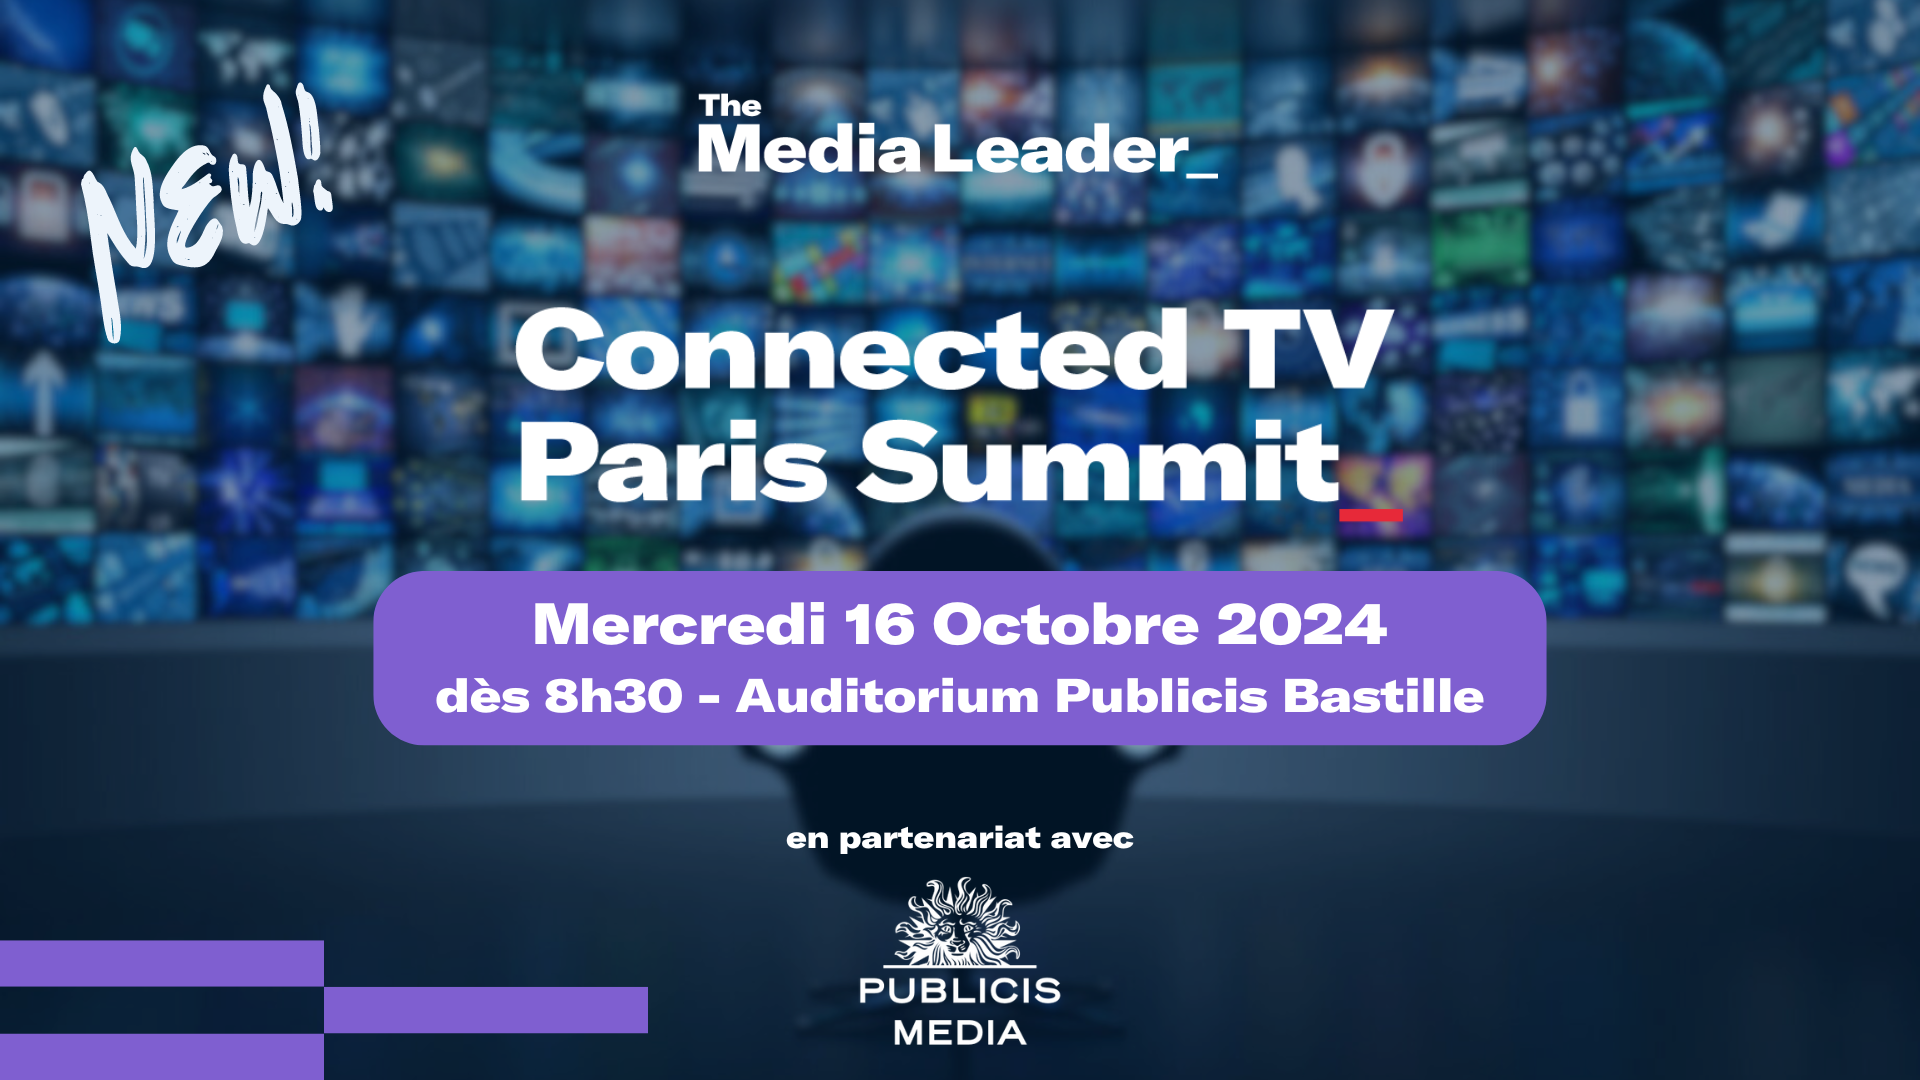 Connected TV Paris Summit